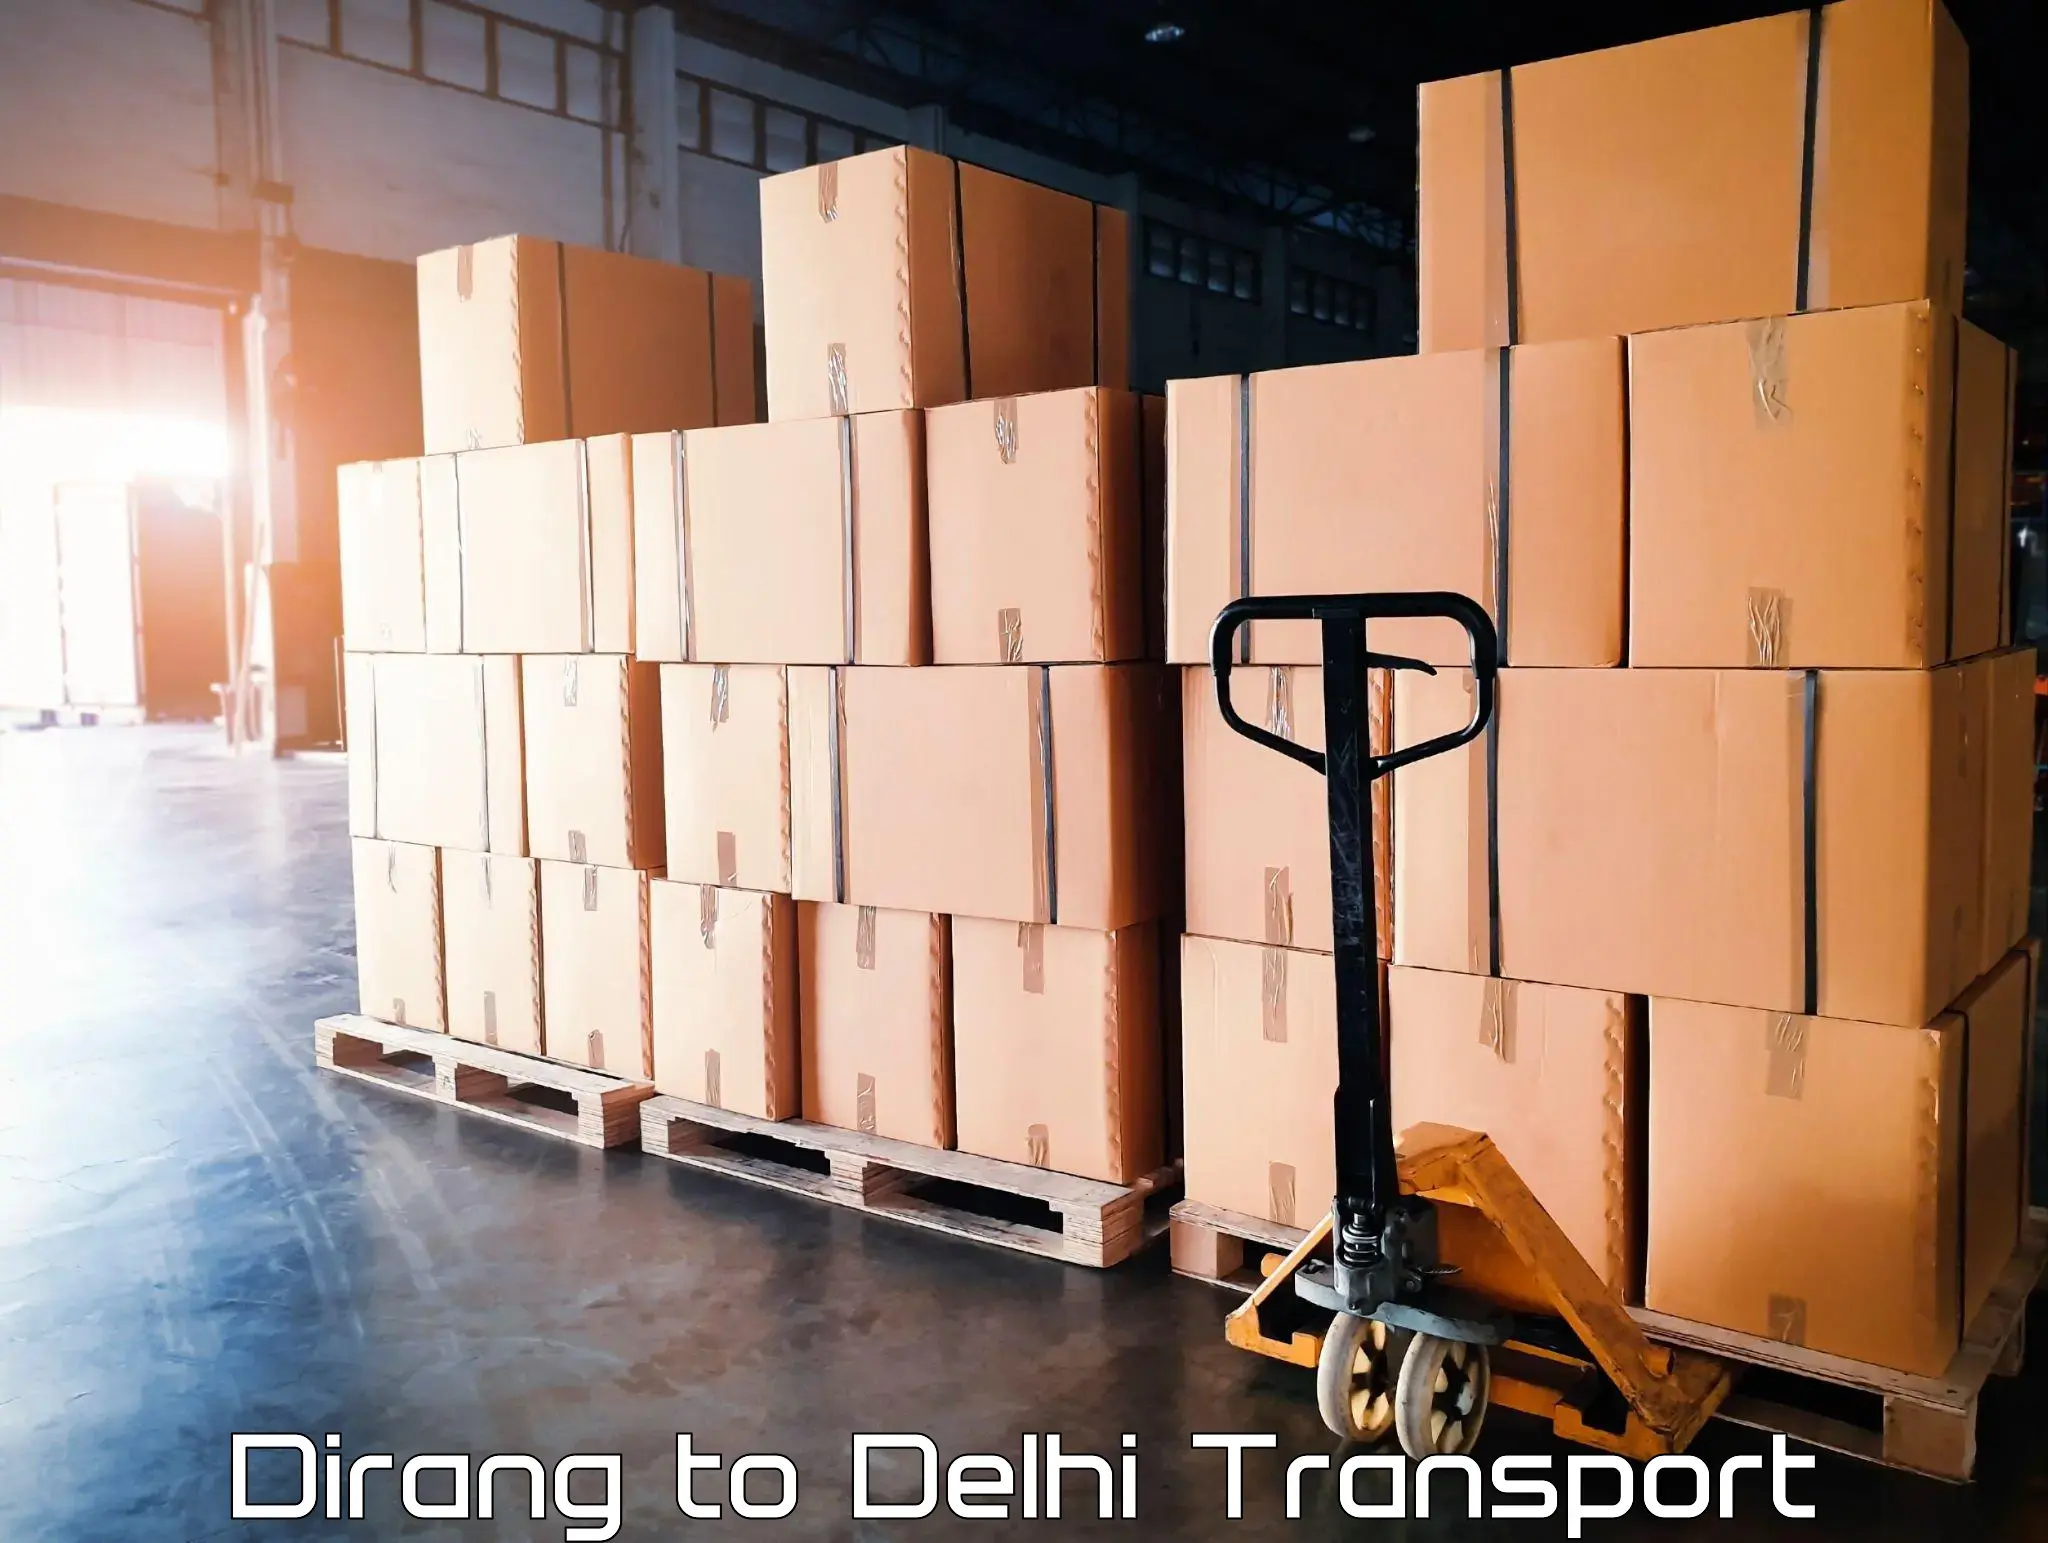 International cargo transportation services Dirang to Delhi